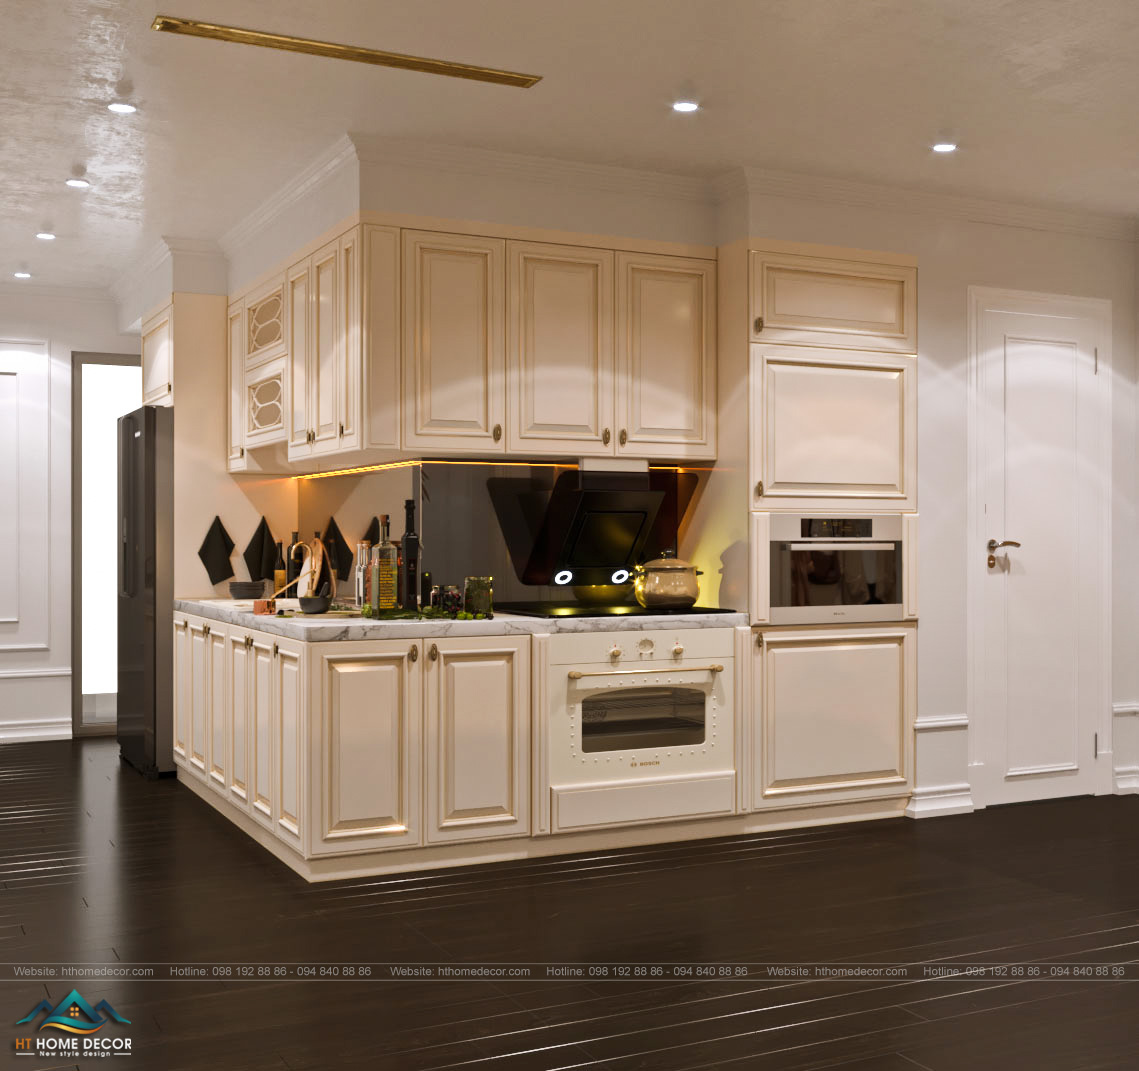 Tủ bếp cũng mang màu kem nhẹ nhàng, đơn giản, tạo nên không gian ấm áp cho thiết kế nội thất chung cư.